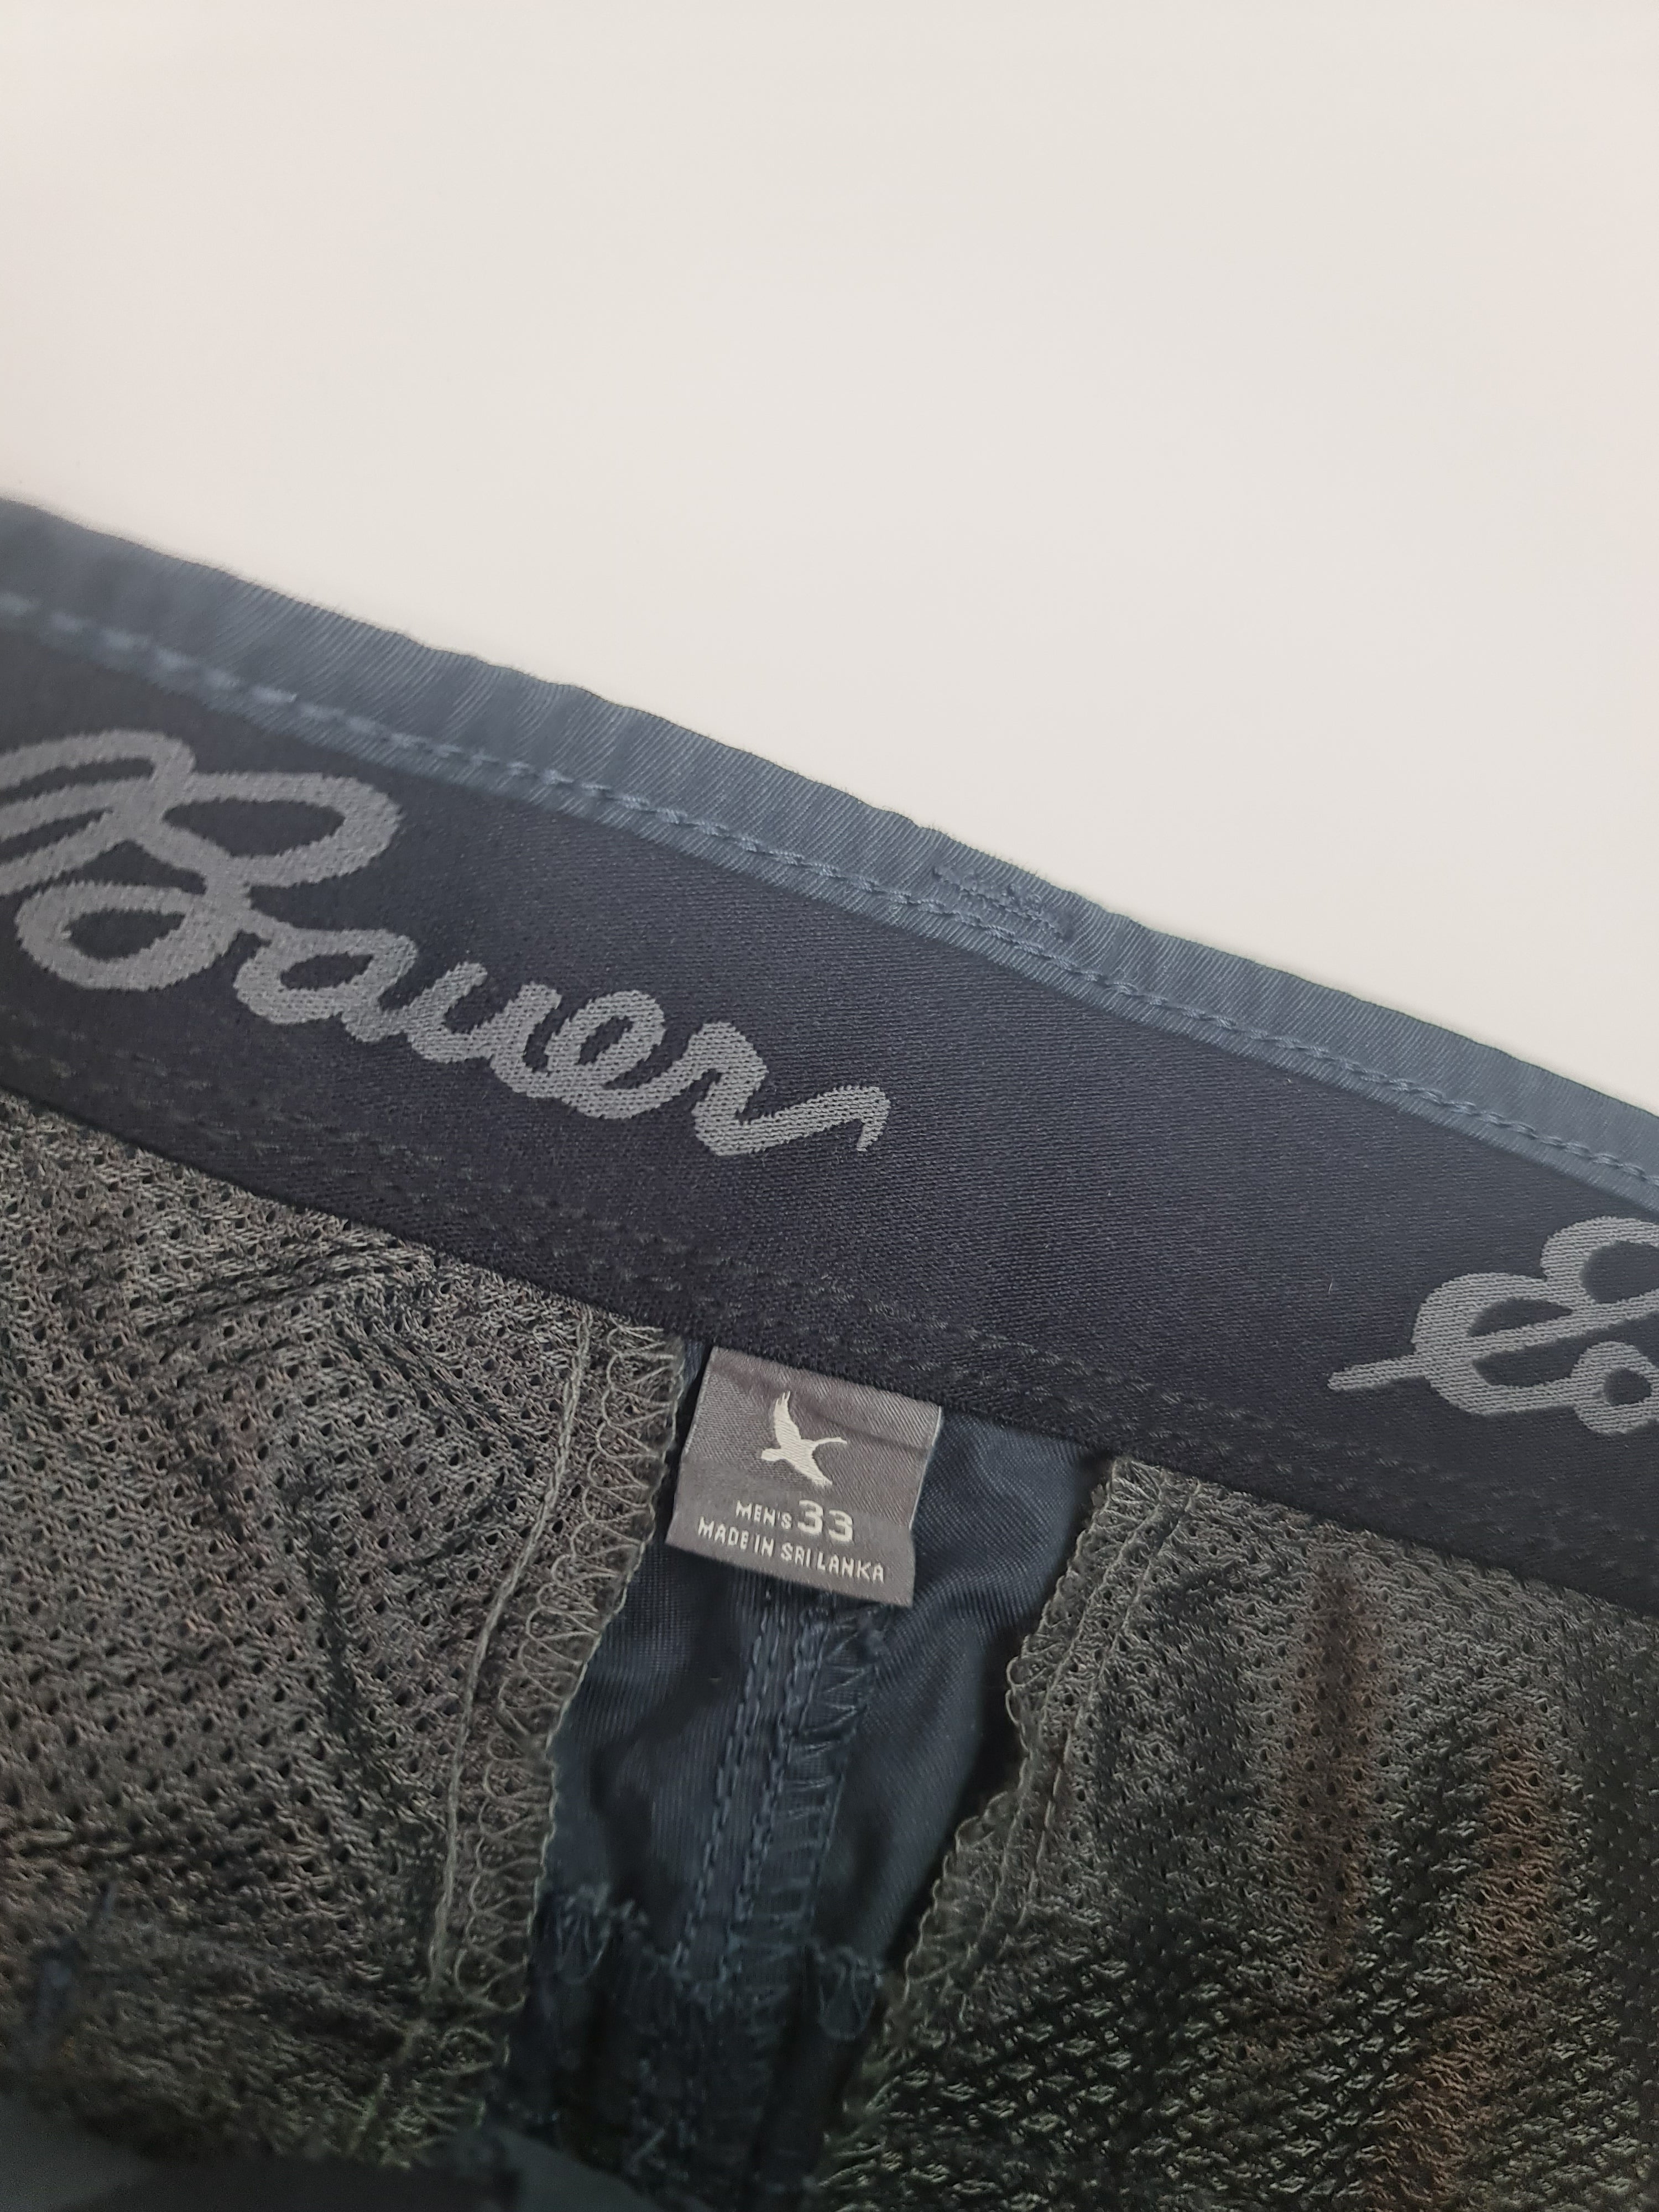 Pantalones corto marca Eddie Bauer - (Talla: 33) Azul Oscuro